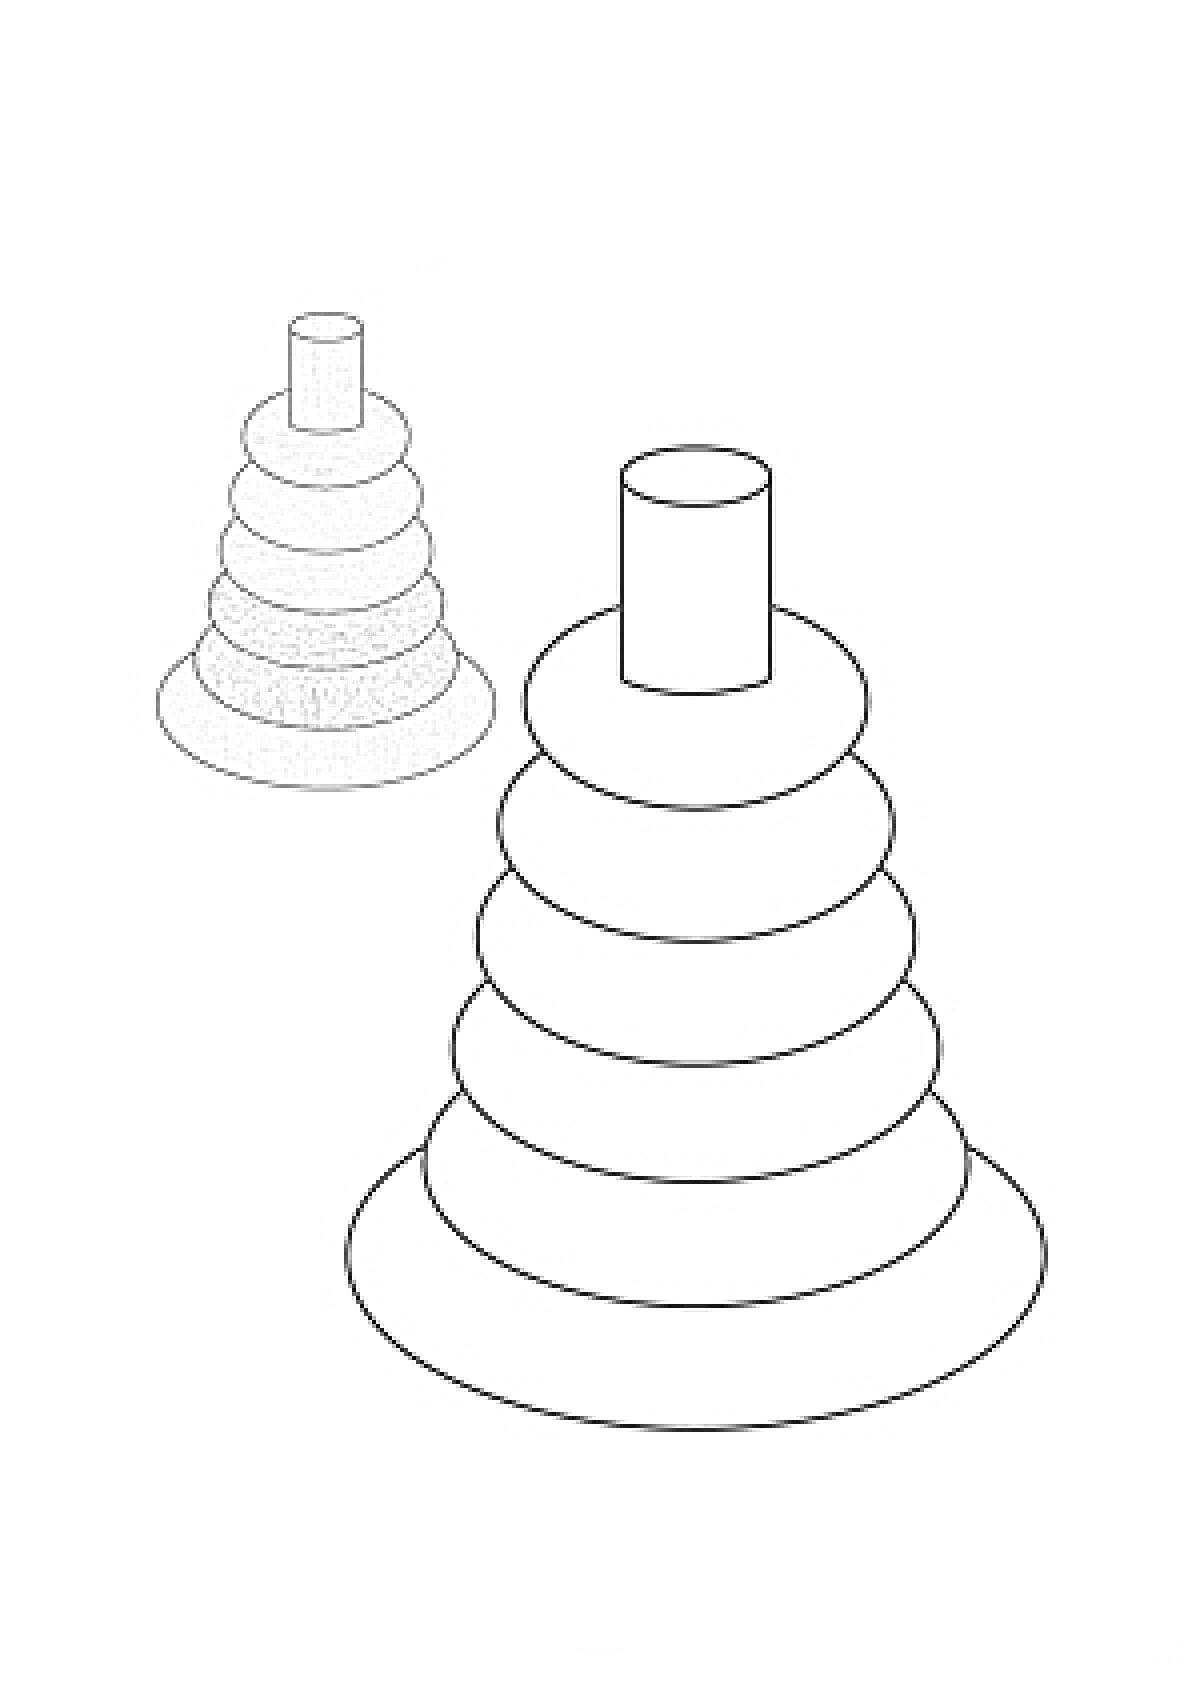 Пирамидка с разноцветными кольцами и их черно-белый контур